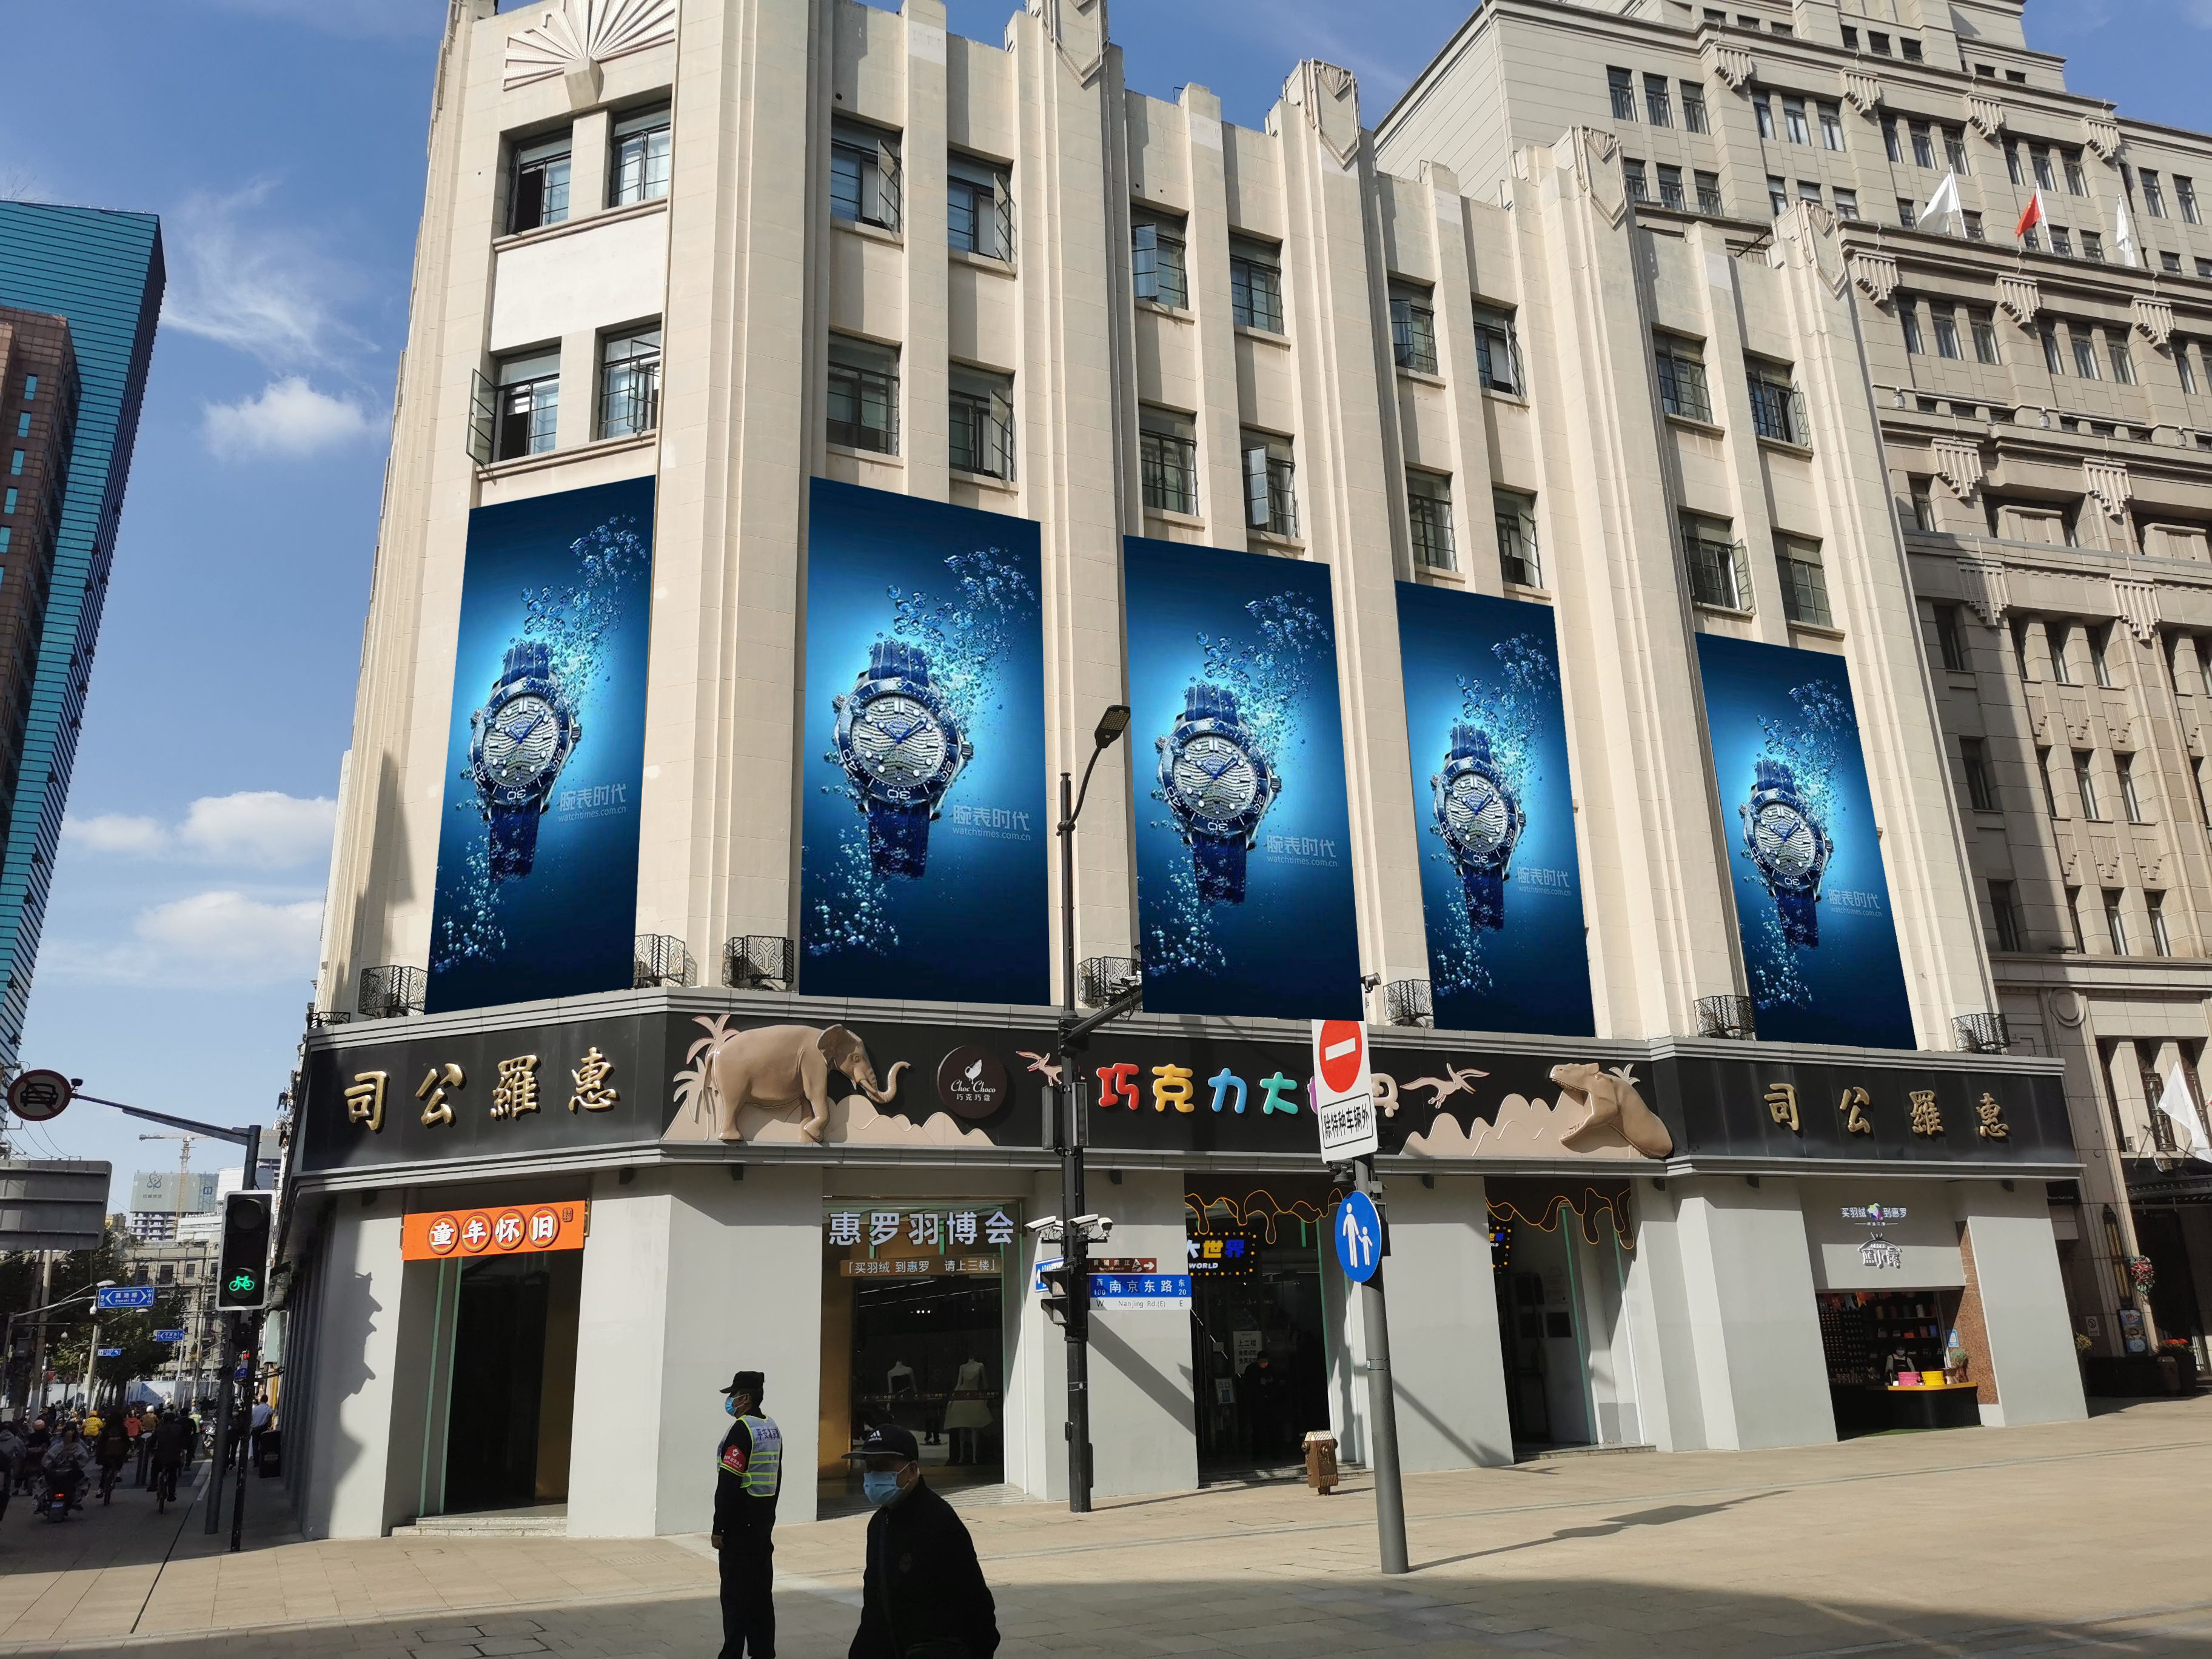 上海黄浦区南京东路100号惠罗大厦墙面广告街边设施媒体喷绘/写真布